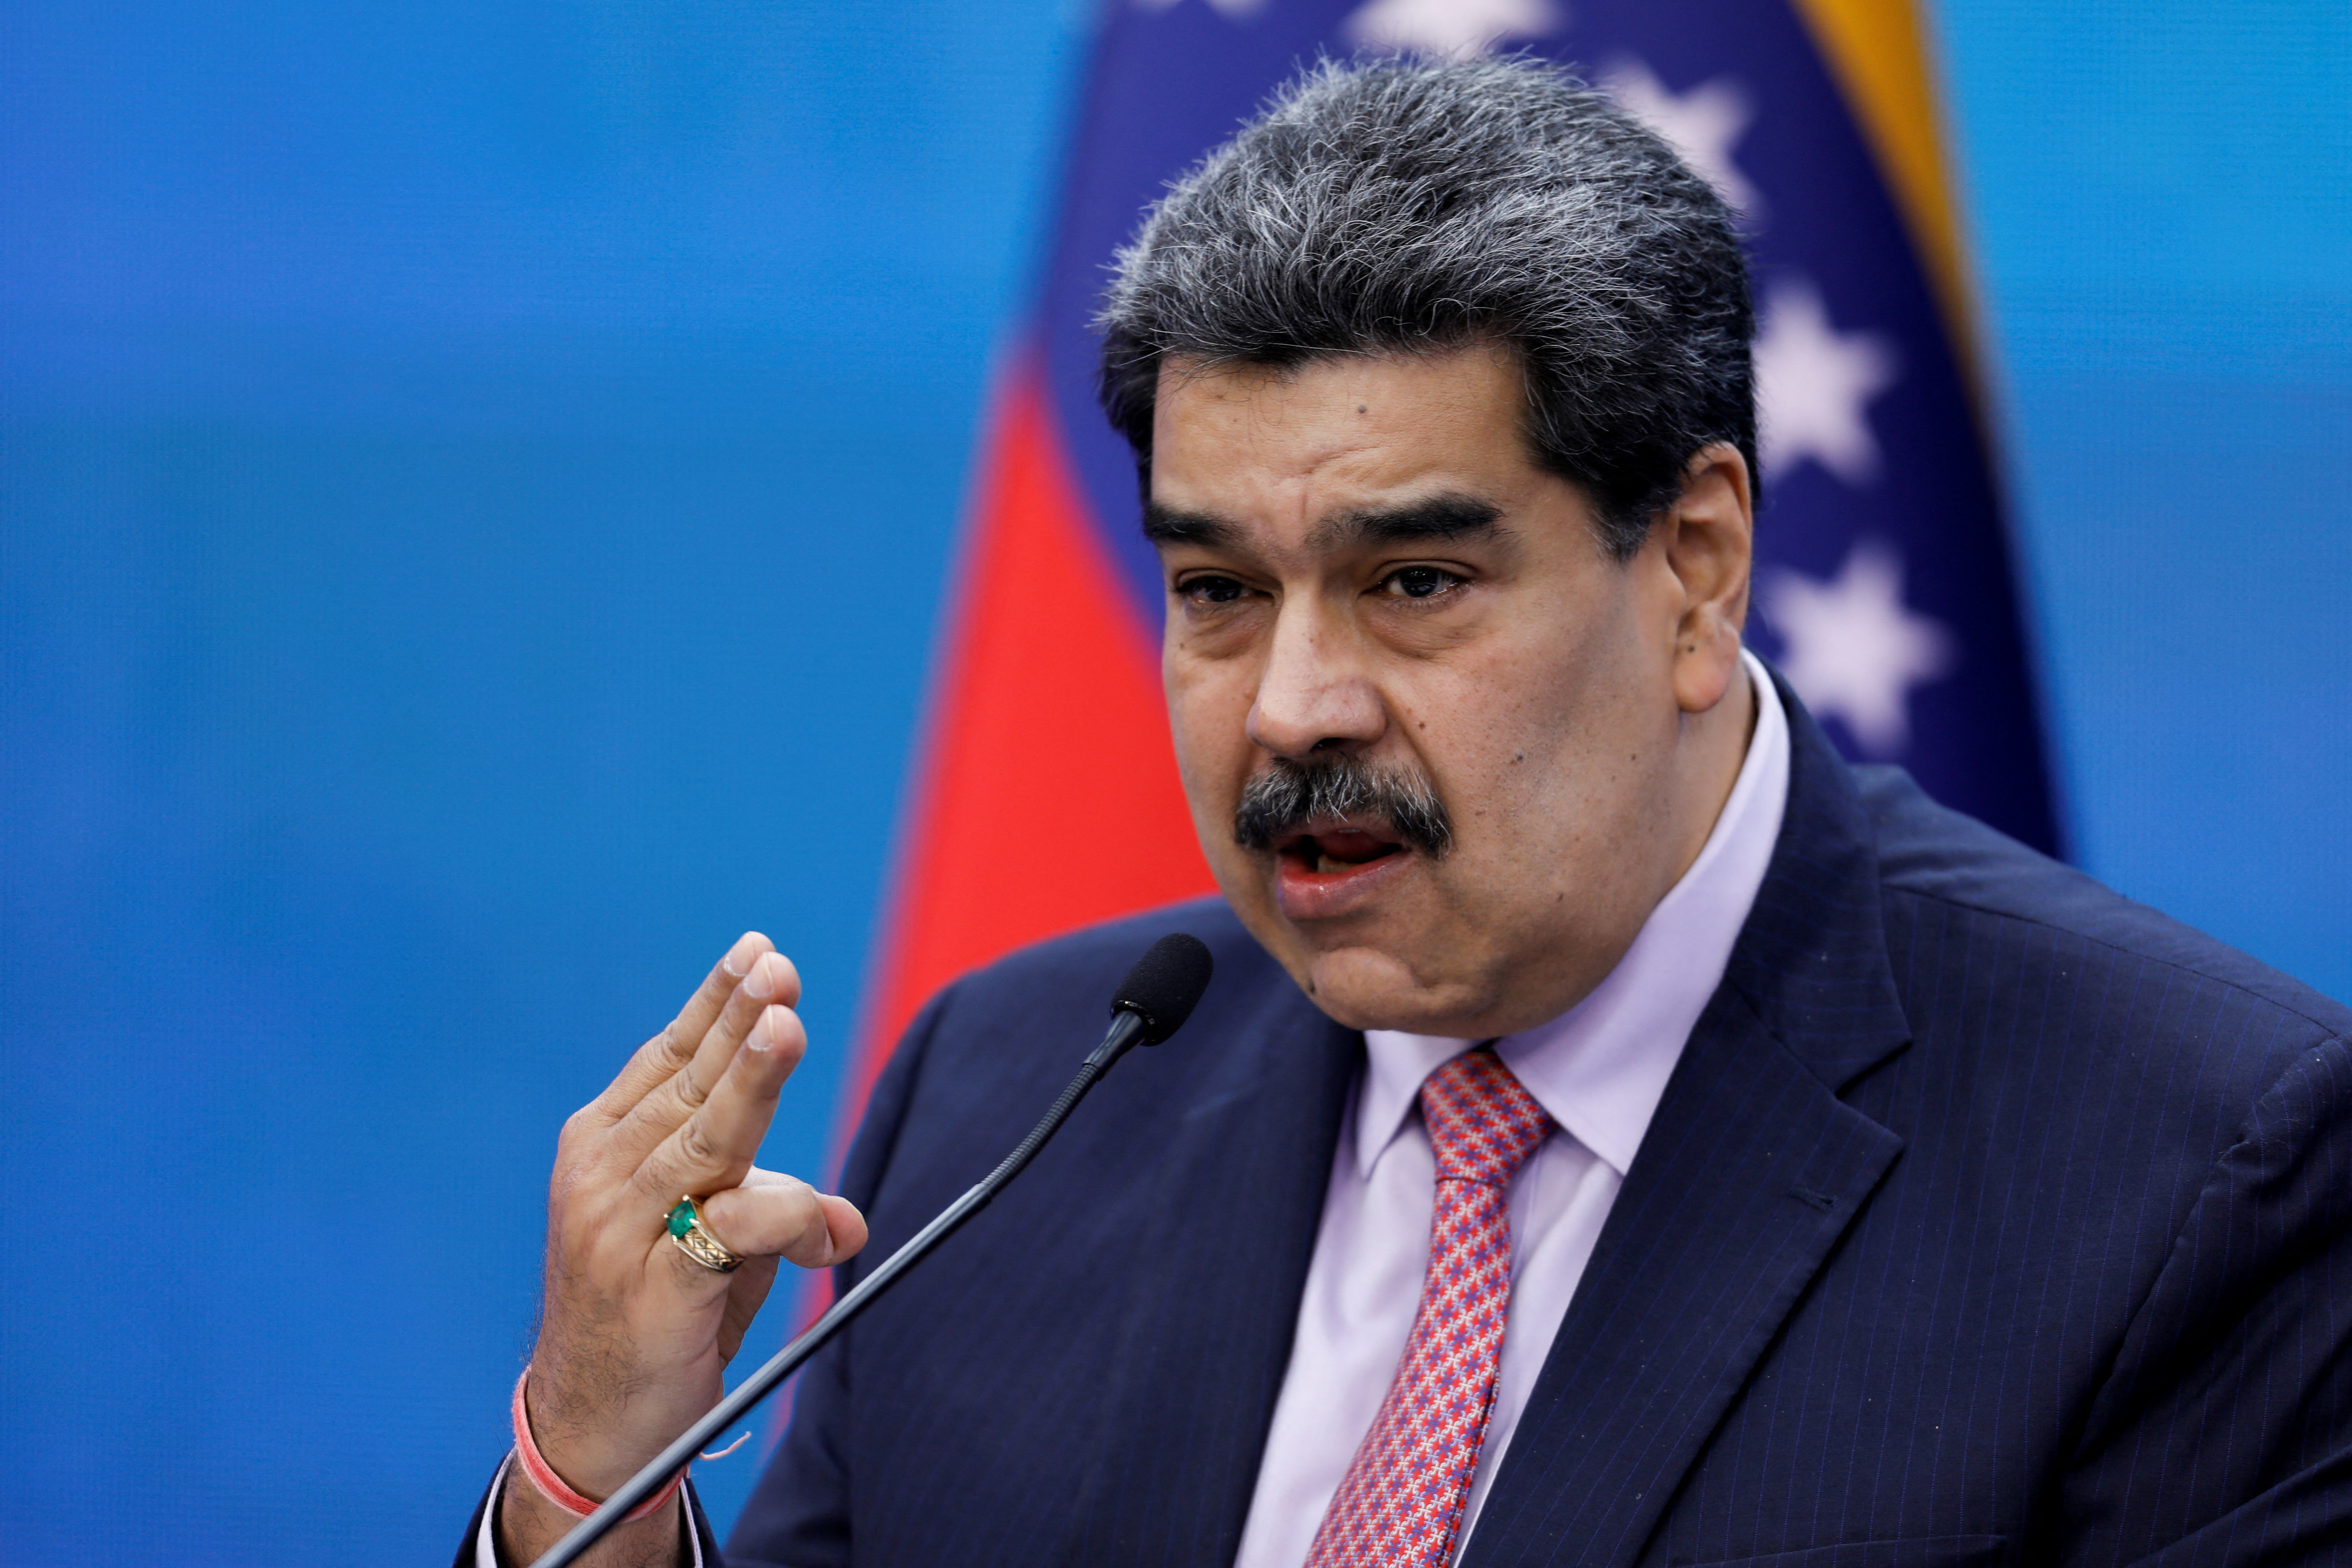 Ned Price remarcó que Estados Unidos no reconoce a Nicolás Maduro como presidente legítimo del país lationamericano (REUTERS)